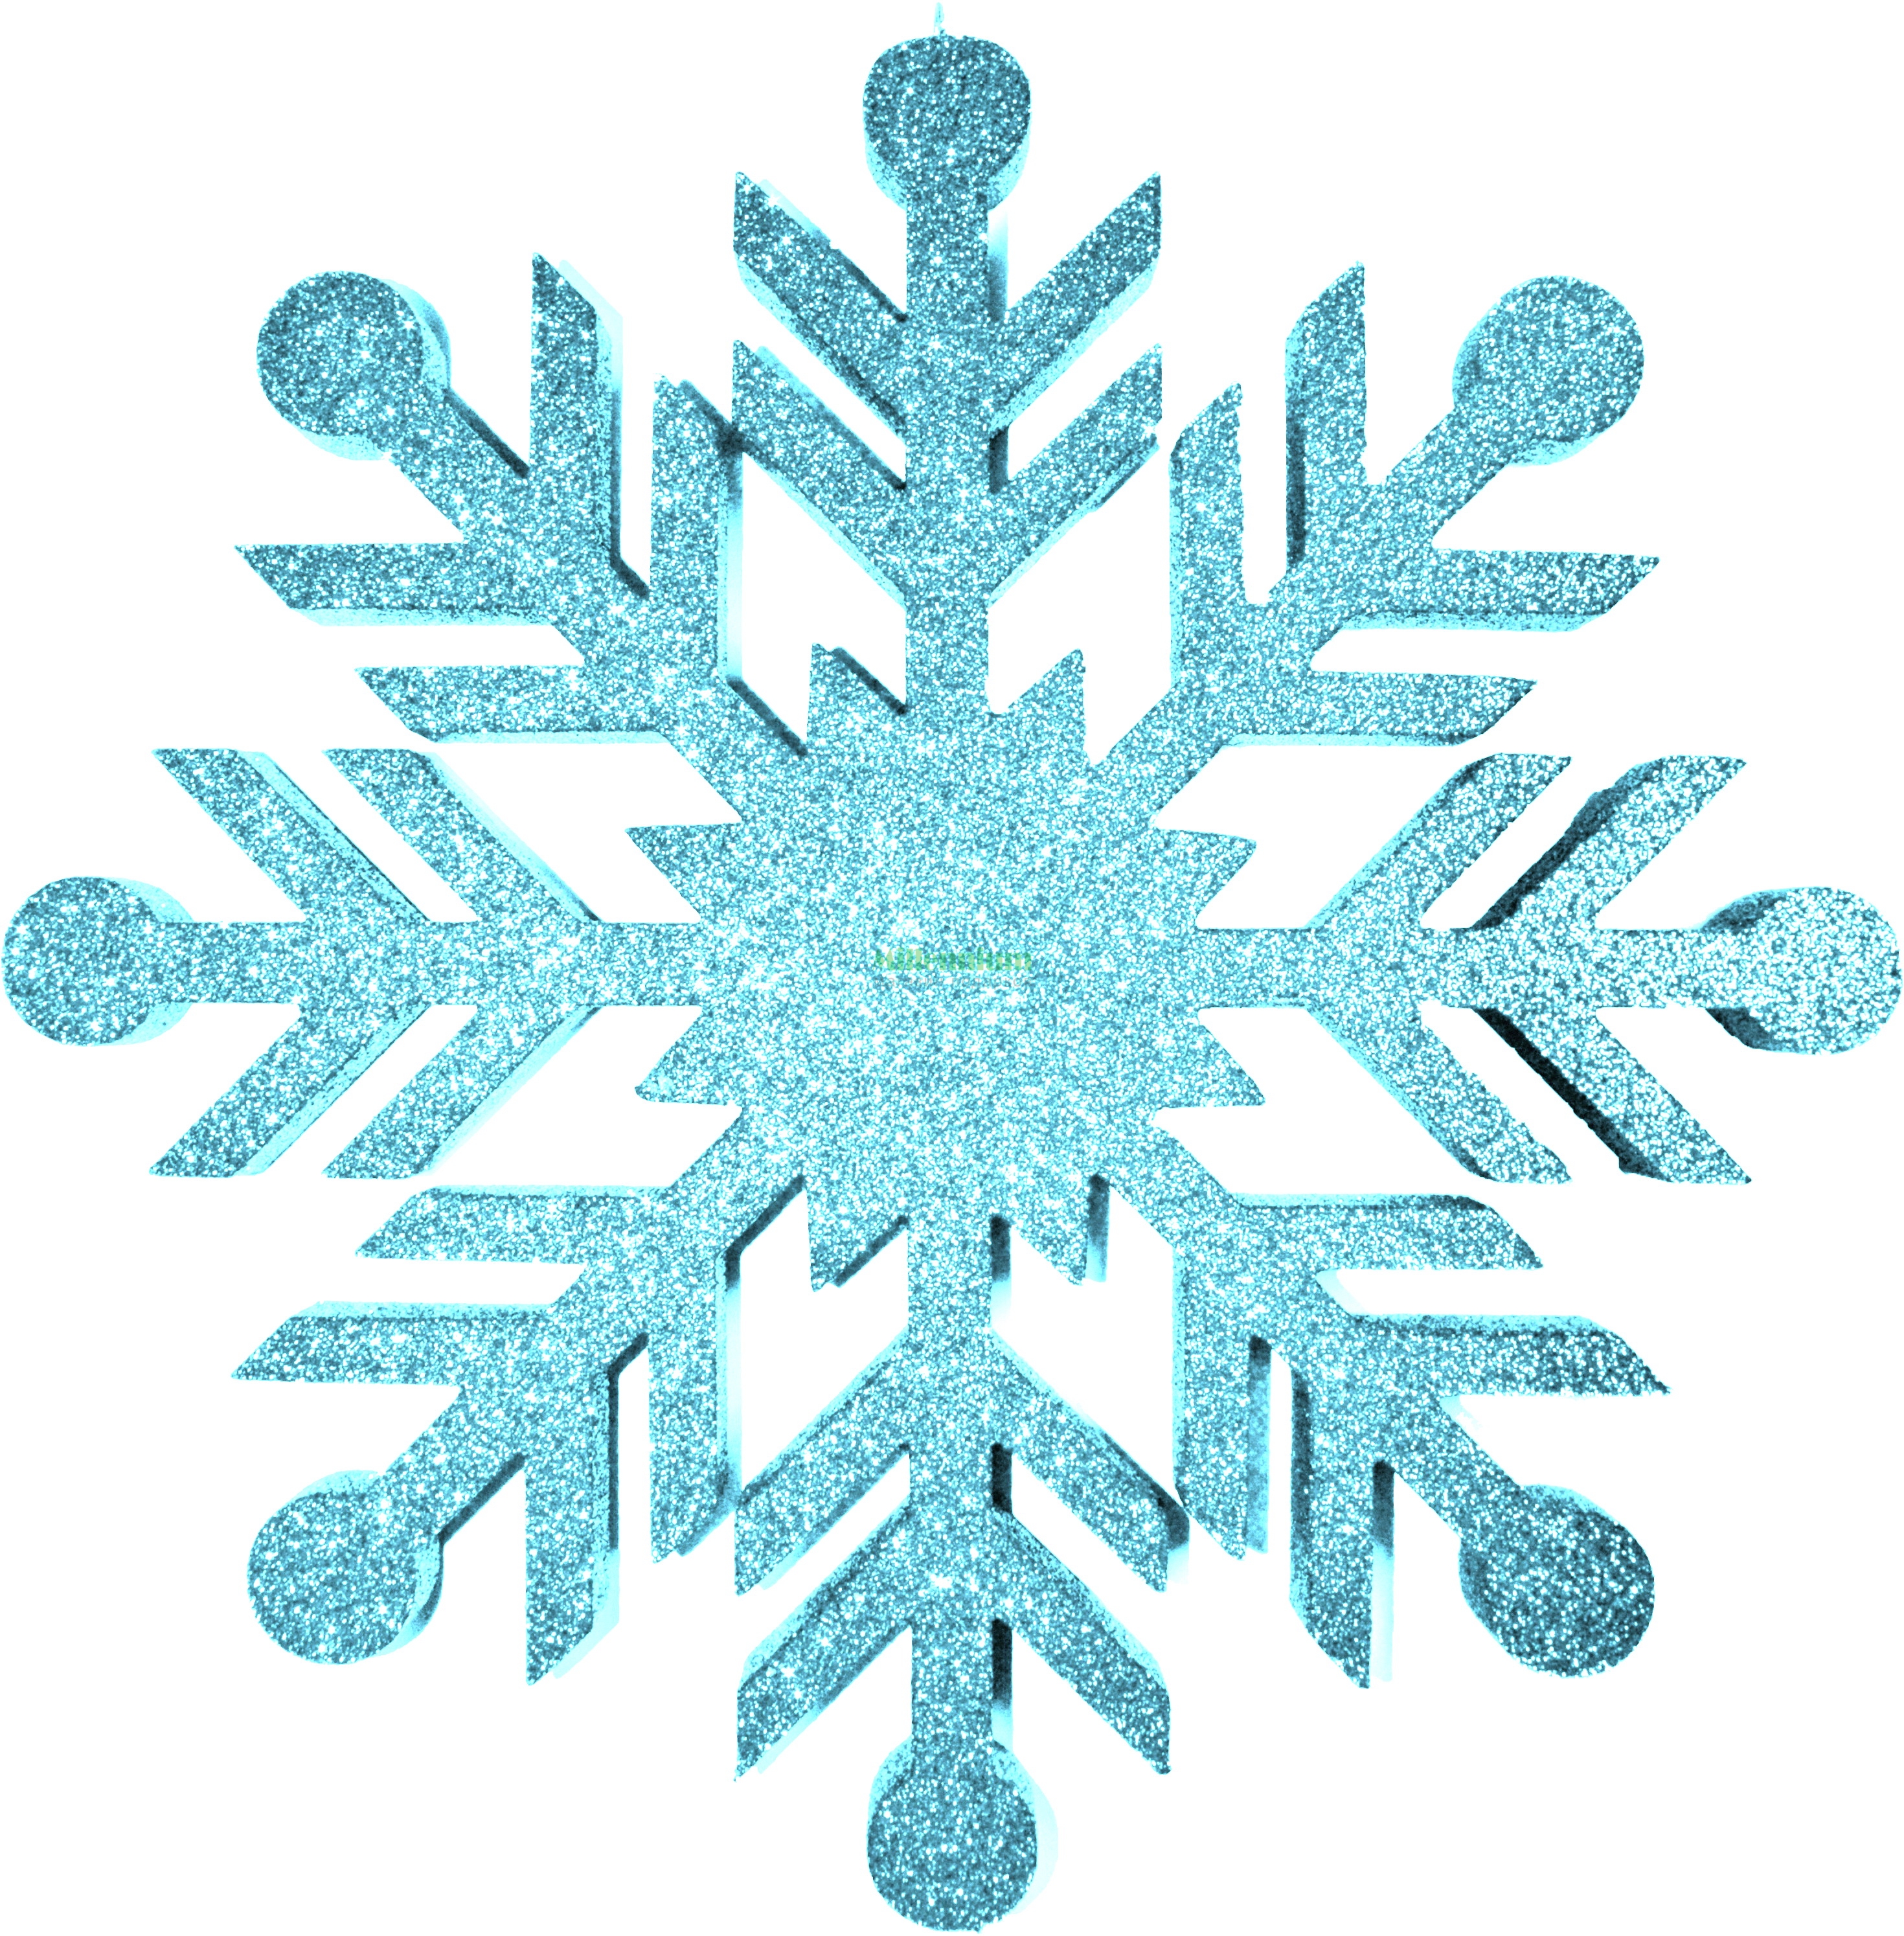 Новогодние снежинки - создаем атмосферу волшебной сказки в вашем доме вместе с taimyr-expo.ru